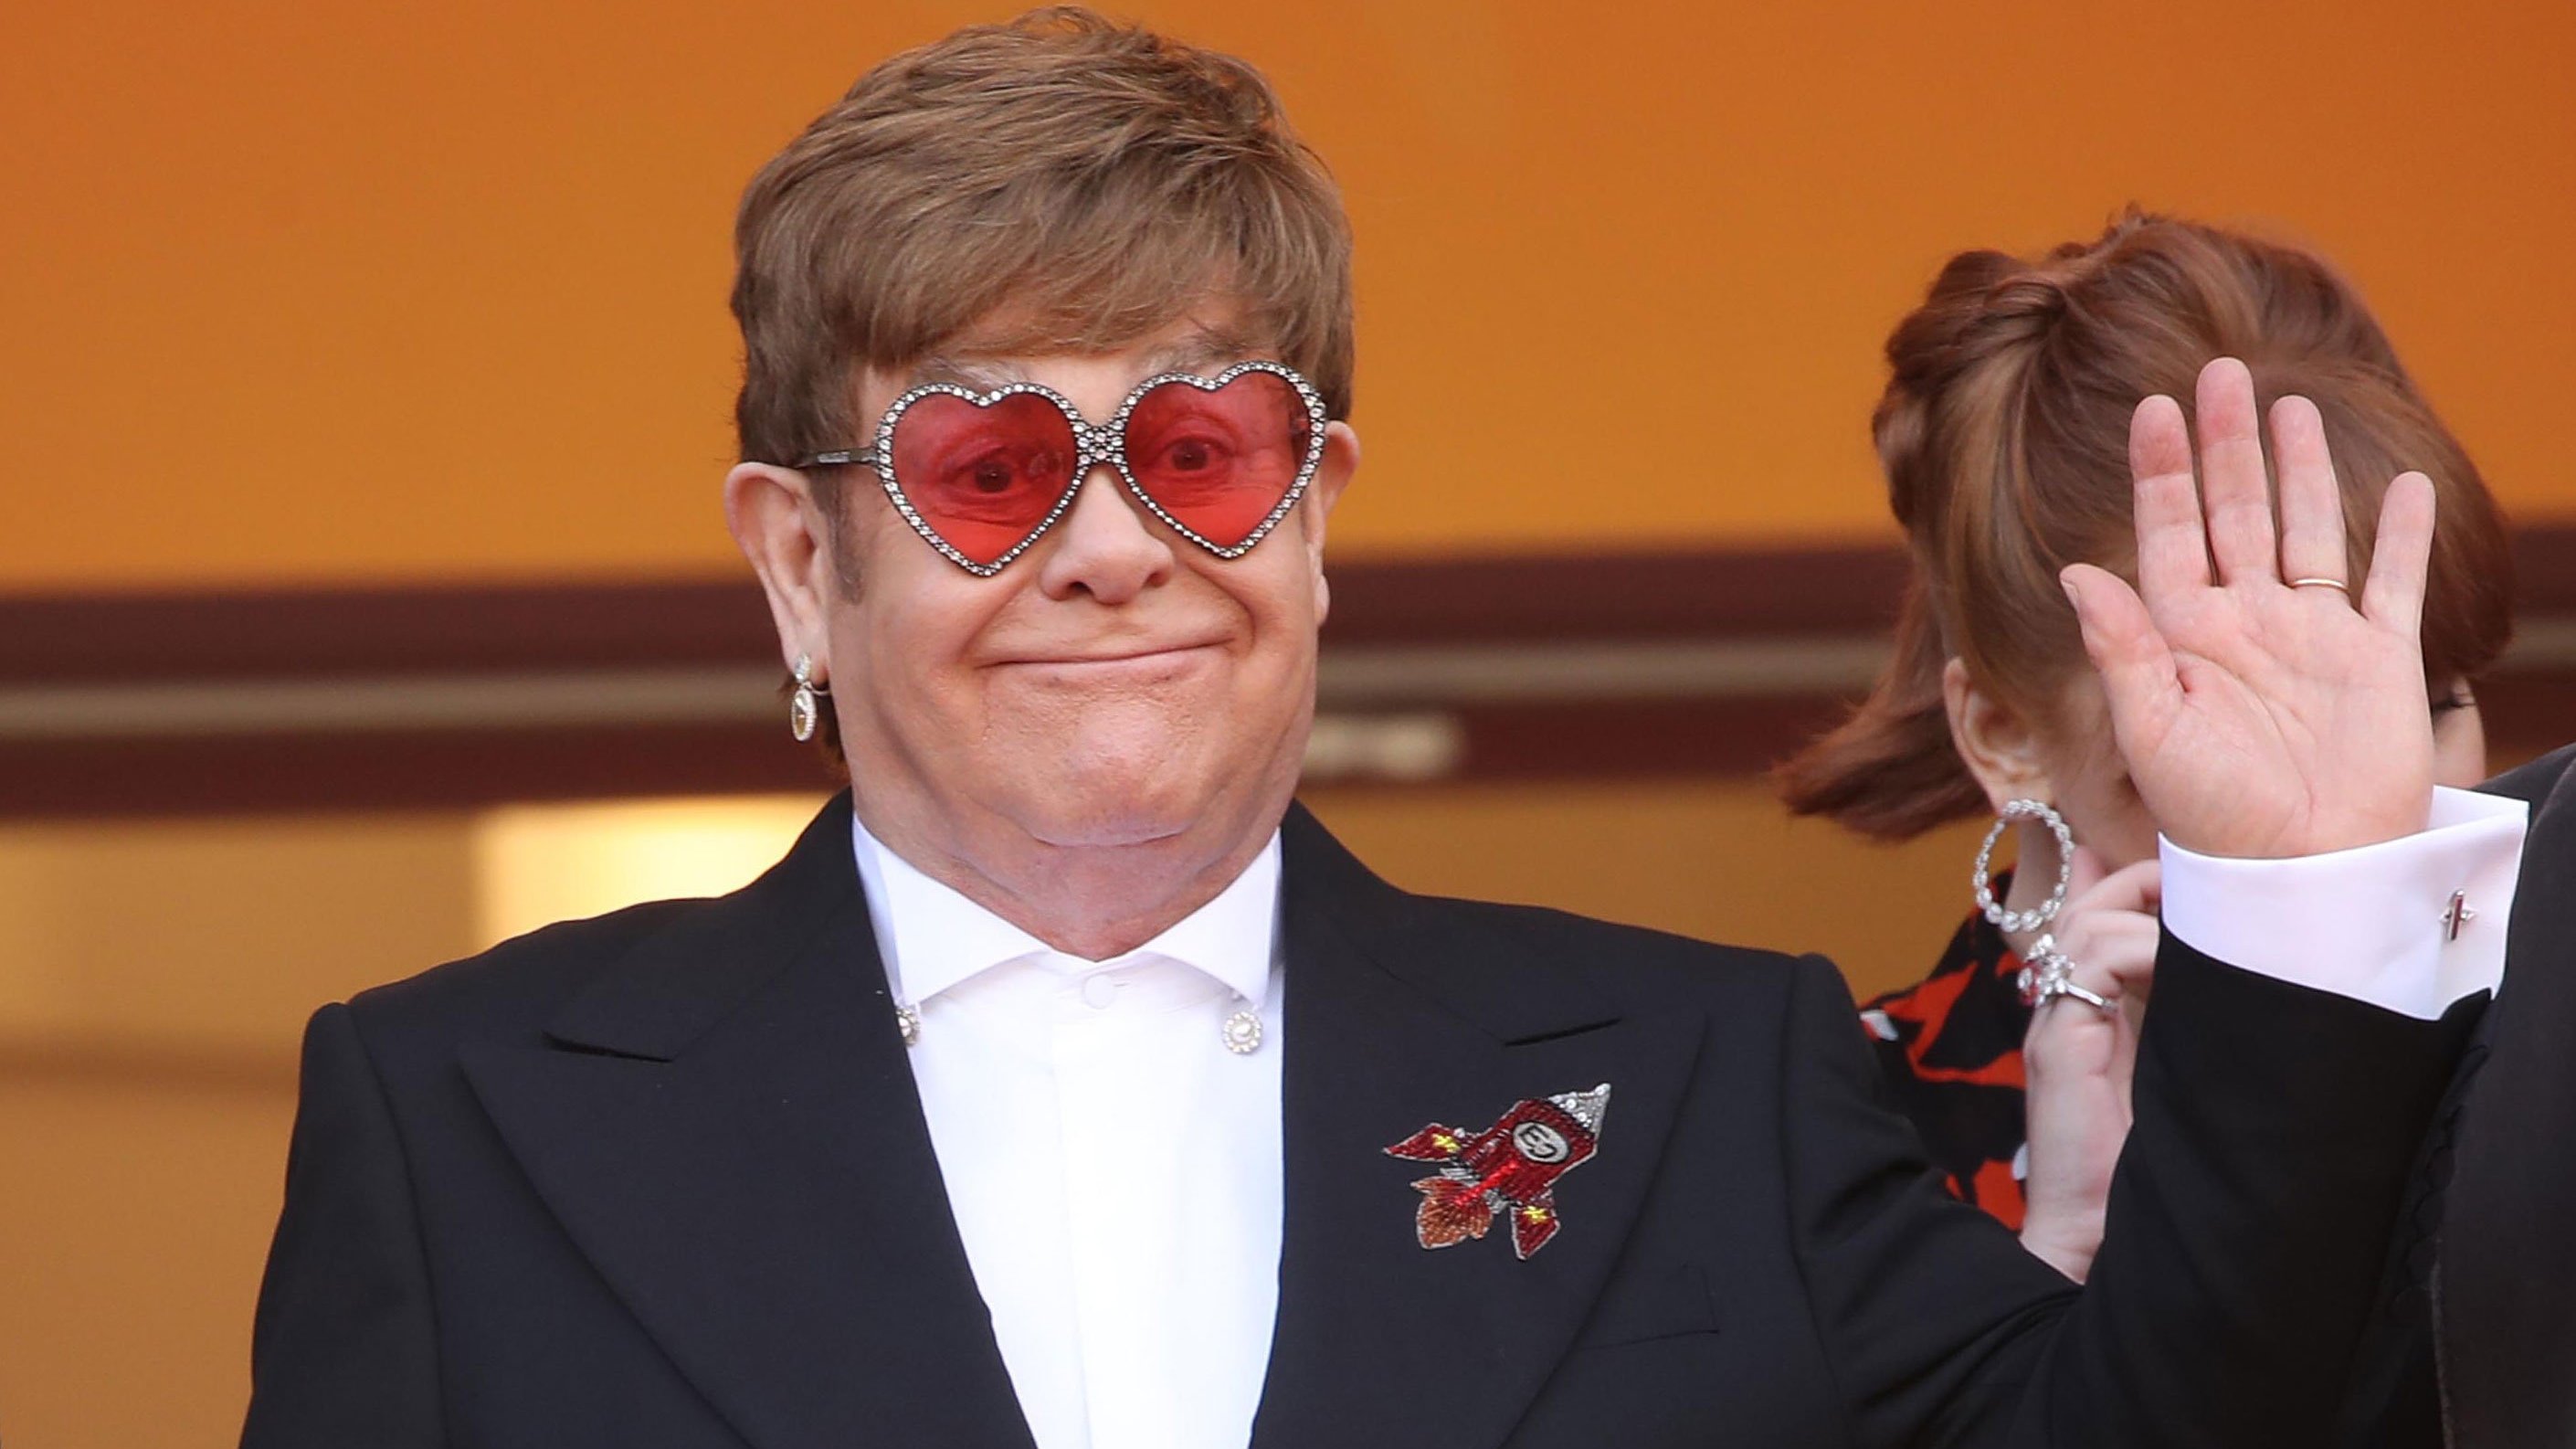 Elton John acenando em evento, usando terno preto com detalhe de flor, e óculos vernelhos em formato de coração, com brilhantes na armação